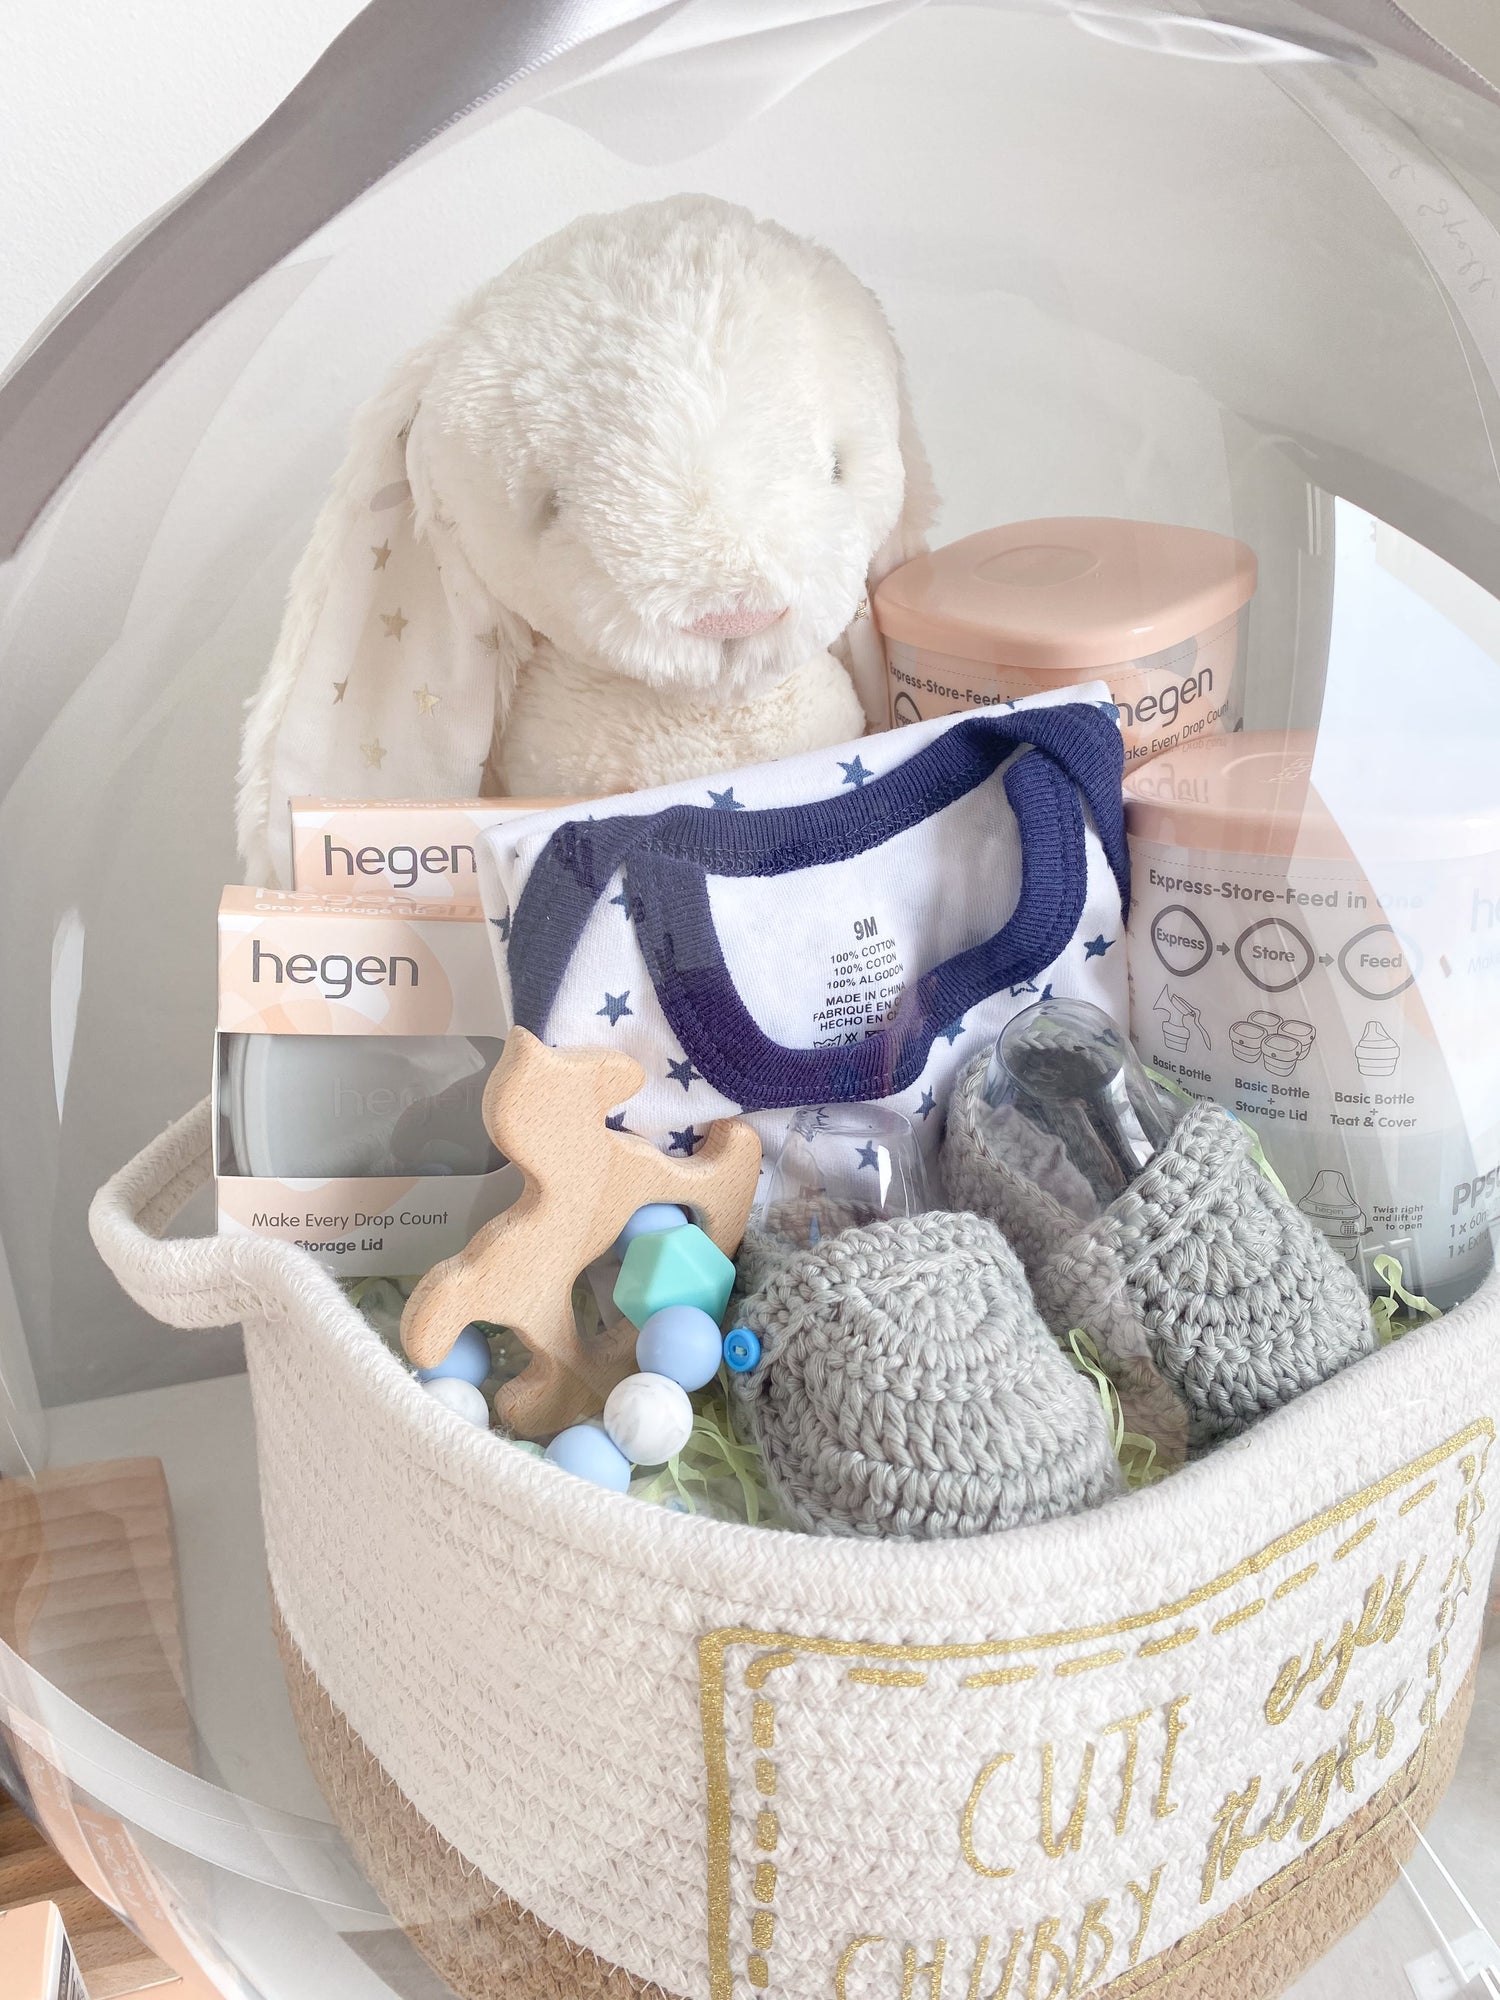 Hegen Baby Gift Set with Diapers